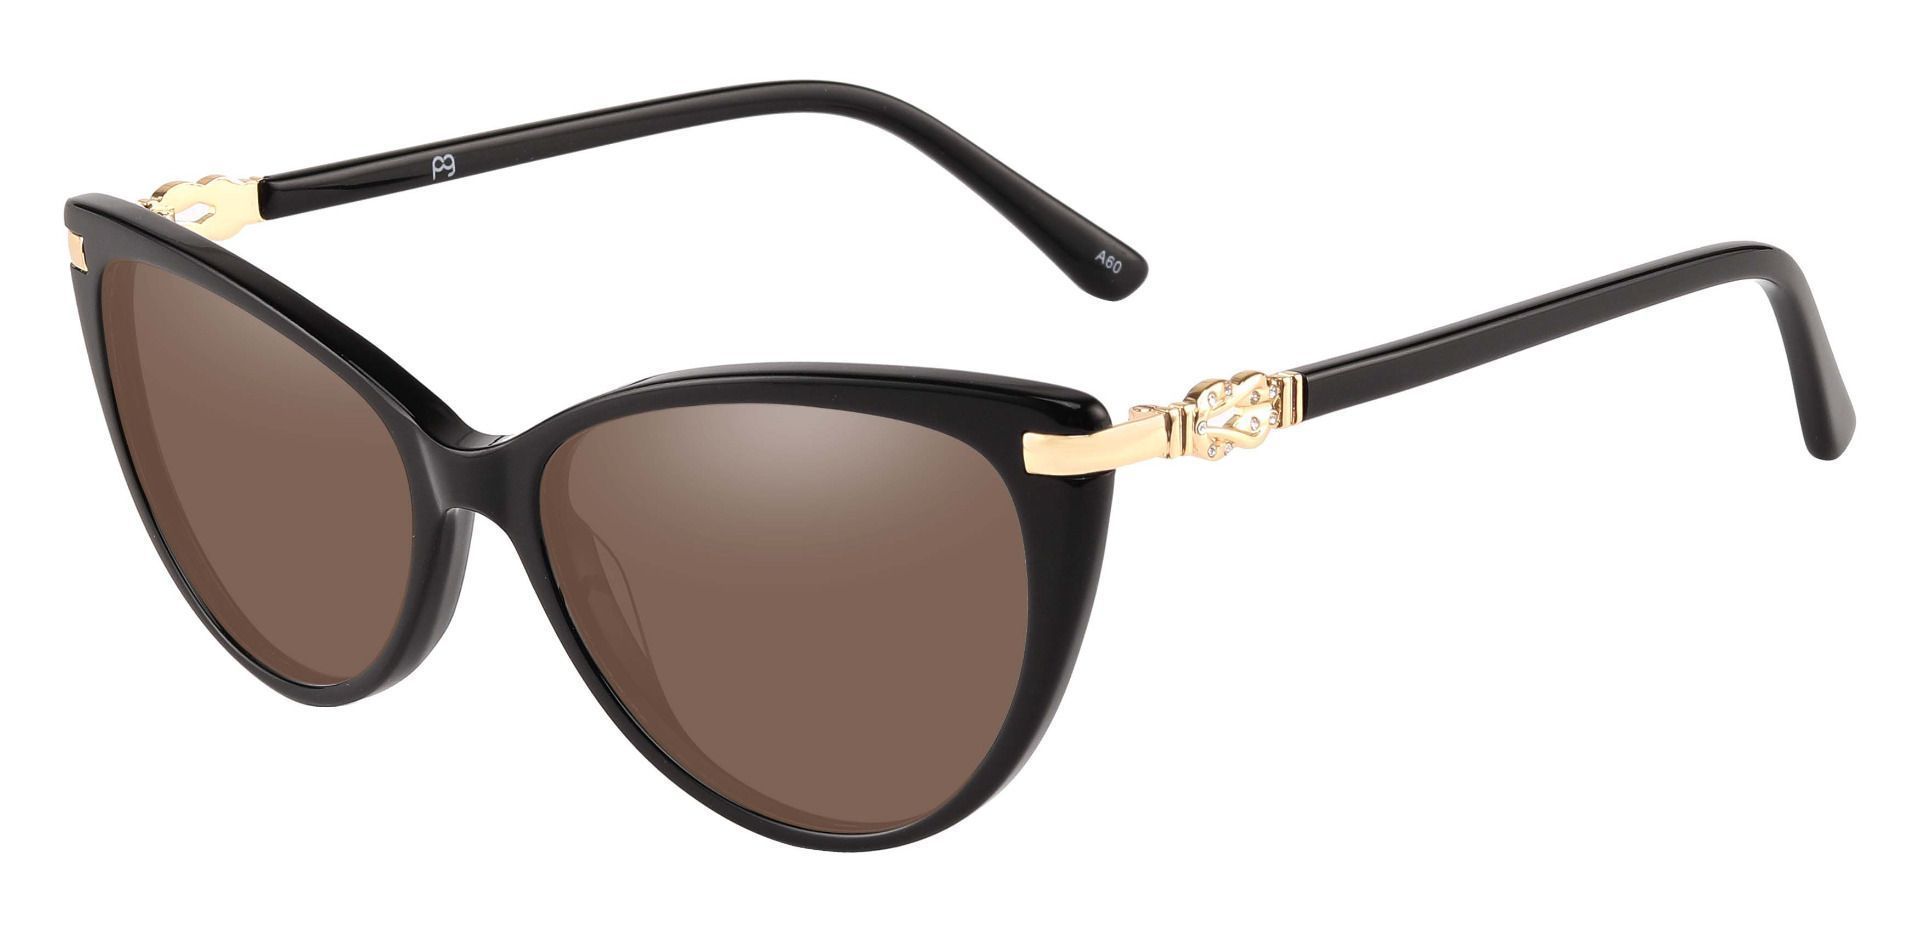 Starla Cat Eye Progressive Sunglasses - Black Frame With Brown Lenses